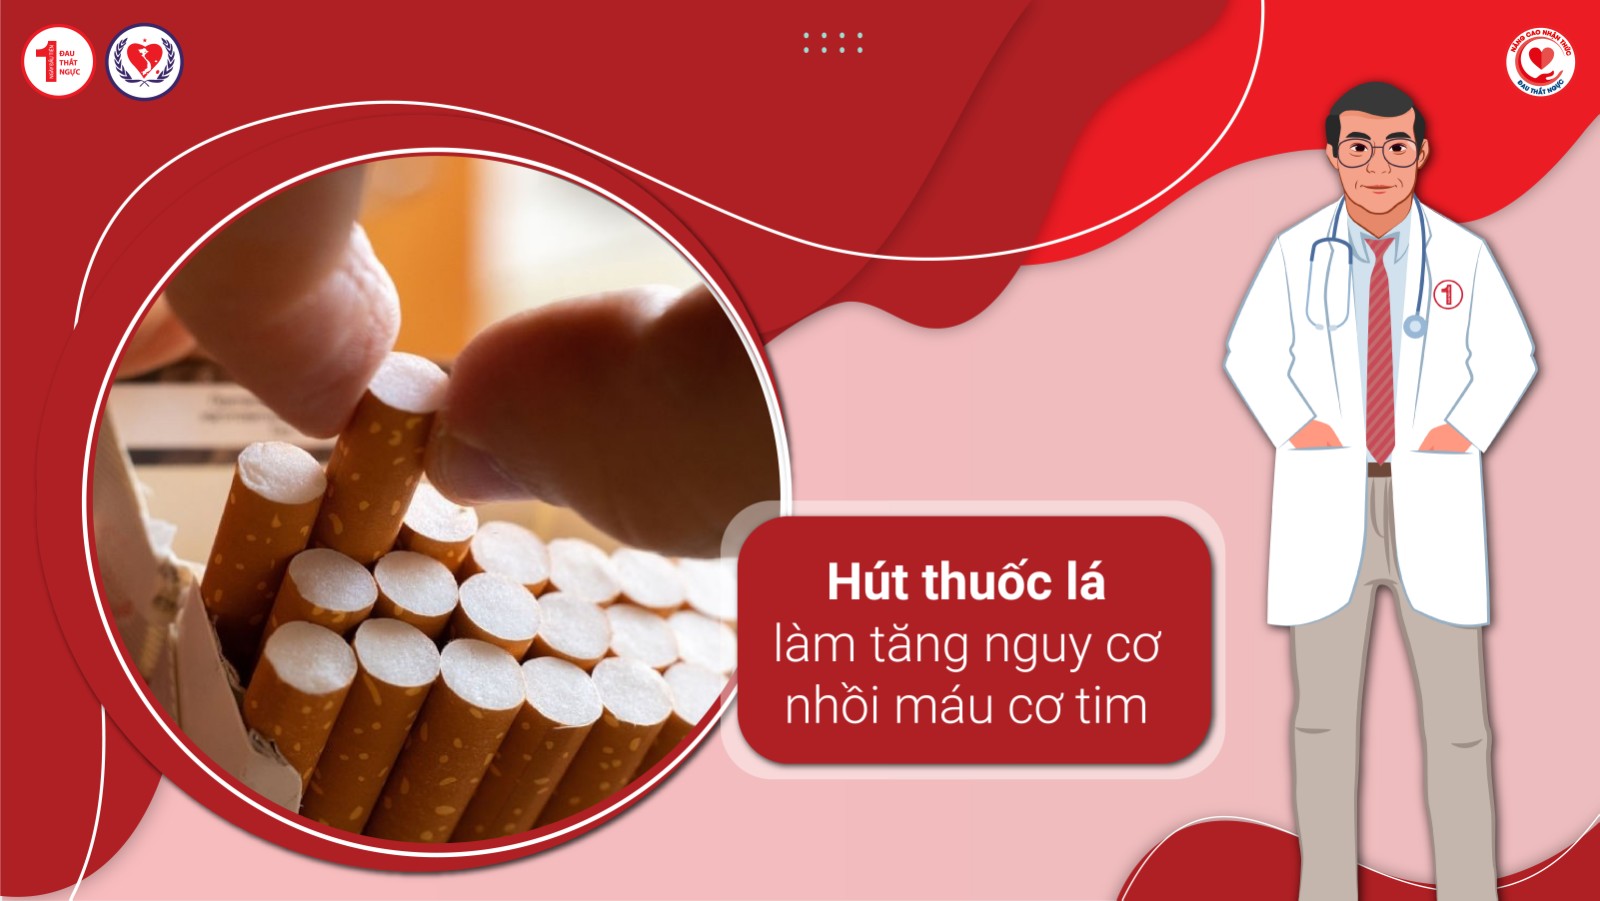 Hút thuốc lá làm tăng nguy cơ nhồi máu cơ tim